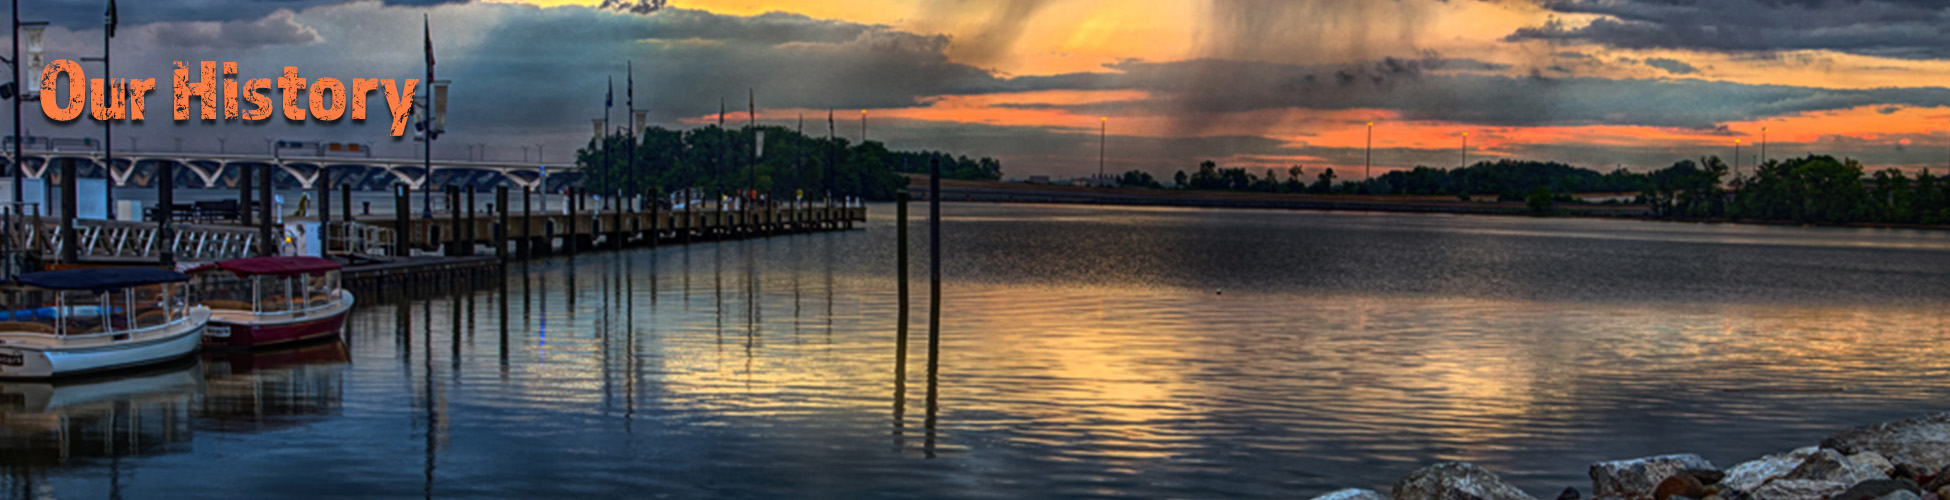 Washington Harbour, Maryland at sunset